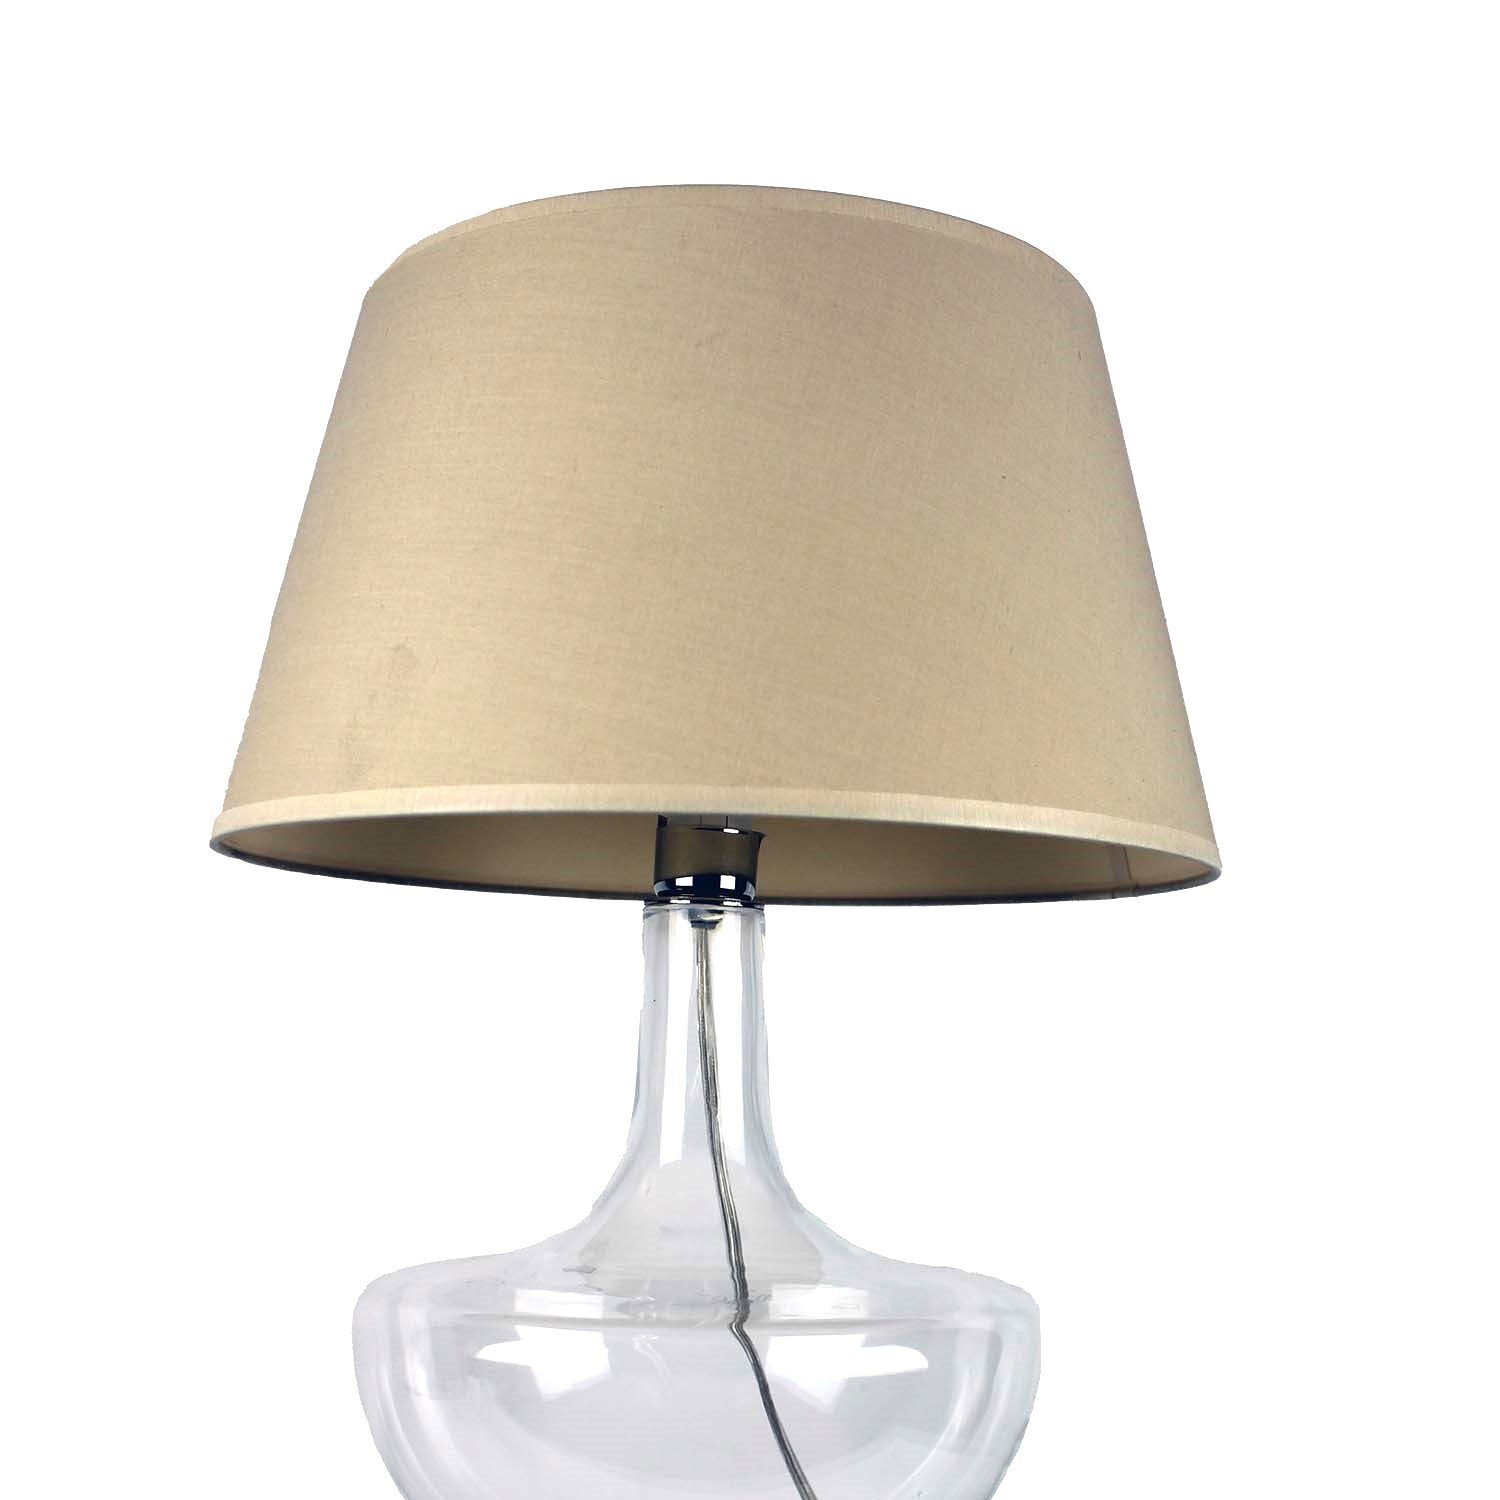 Signature Home Collection Nachttischlampe Glaslampe warmweiß, klassischen Lampenschirm, mit klassisch Glaslampe bauchig Leuchtmittel, Stil klar ohne im